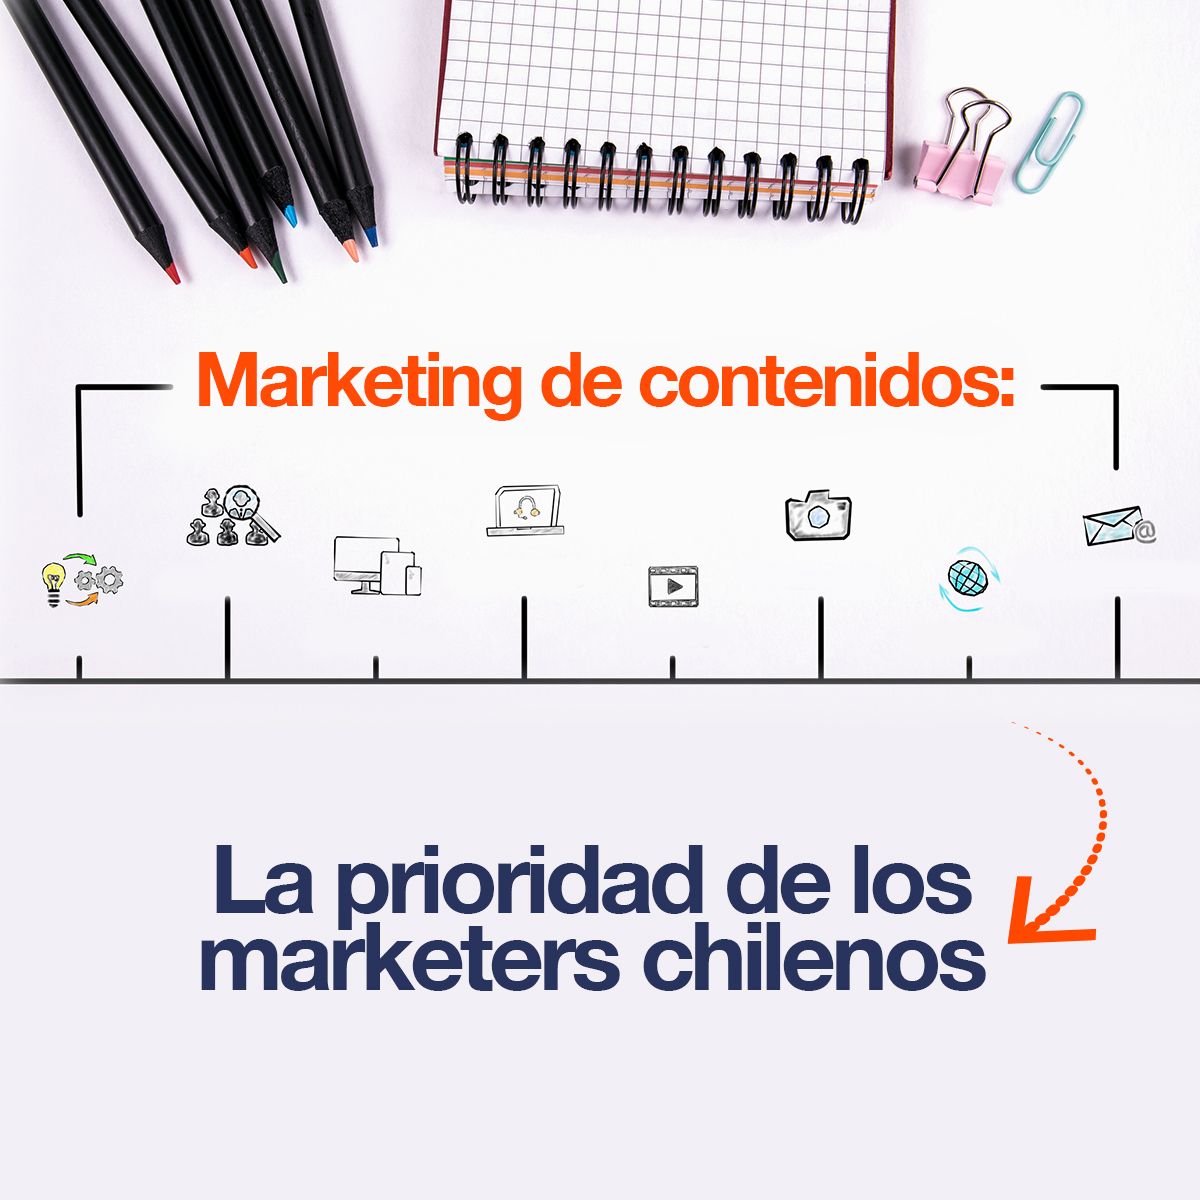 Marketing de contenidos: La prioridad de los marketers chilenos